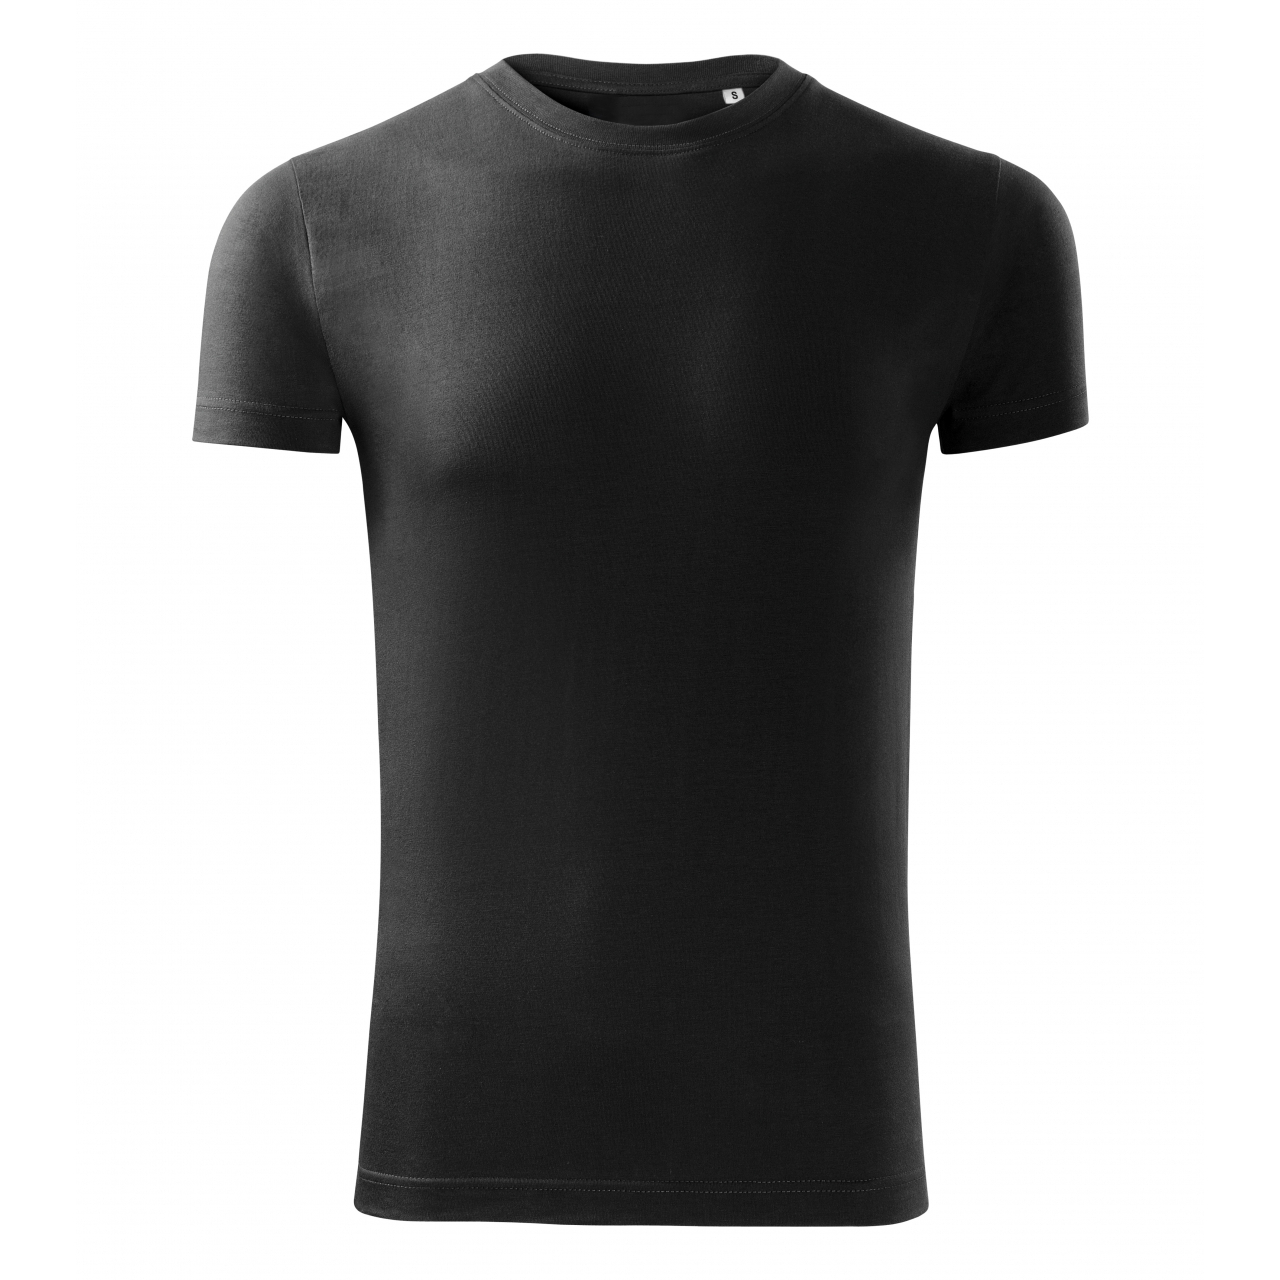 Tričko pánské Malfini Viper Free - černé, XL